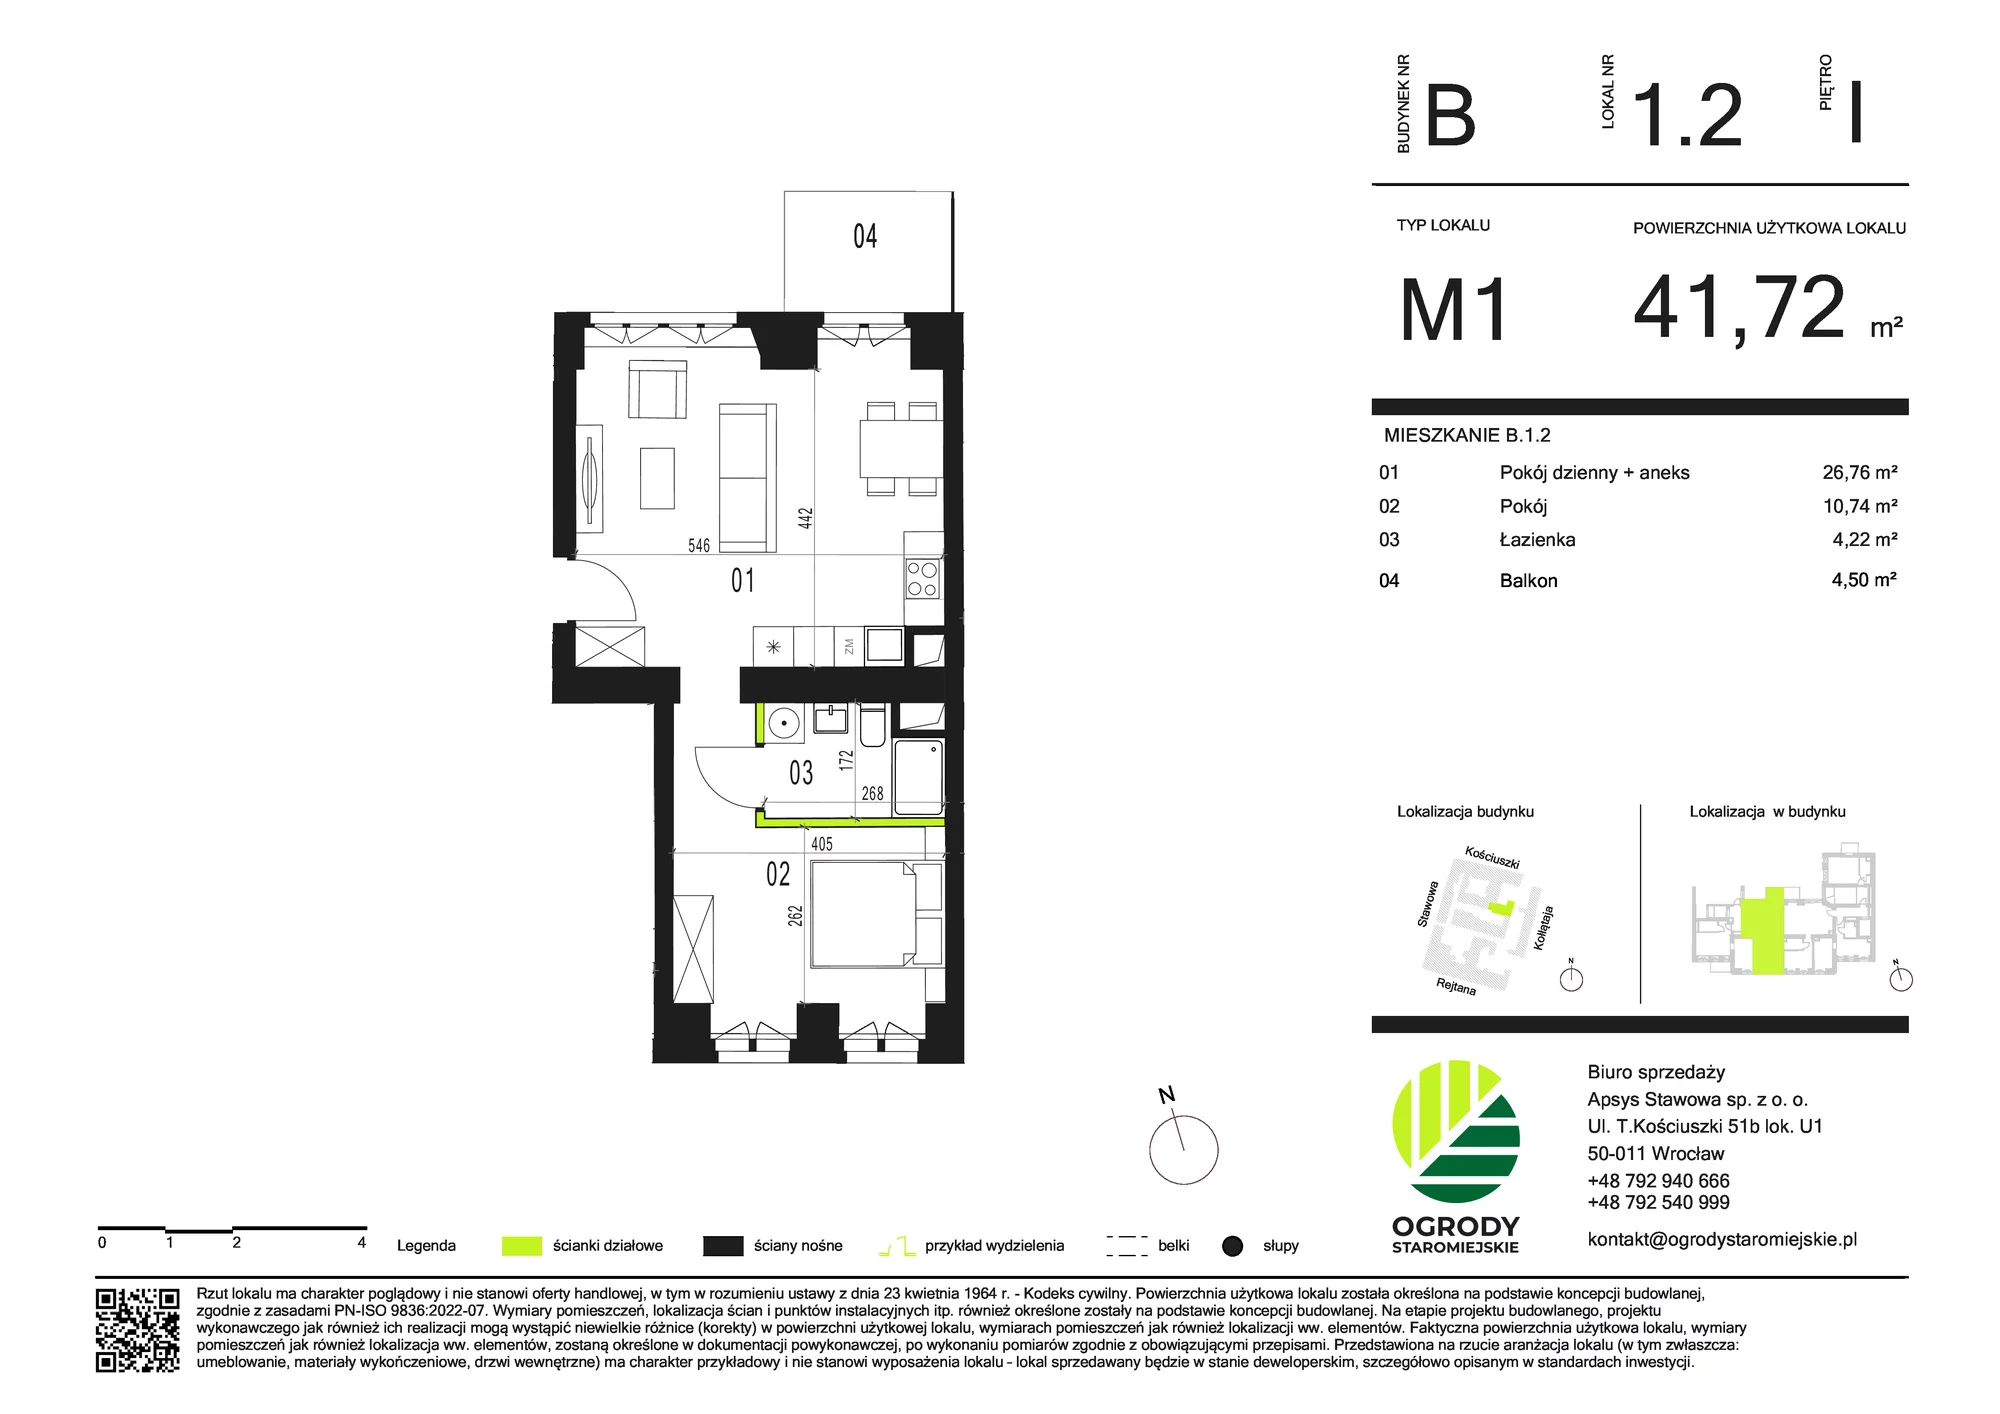 Mieszkanie 41,72 m², piętro 1, oferta nr B.1.2, Ogrody Staromiejskie, Wrocław, Przedmieście Świdnickie, ul. Stawowa 10